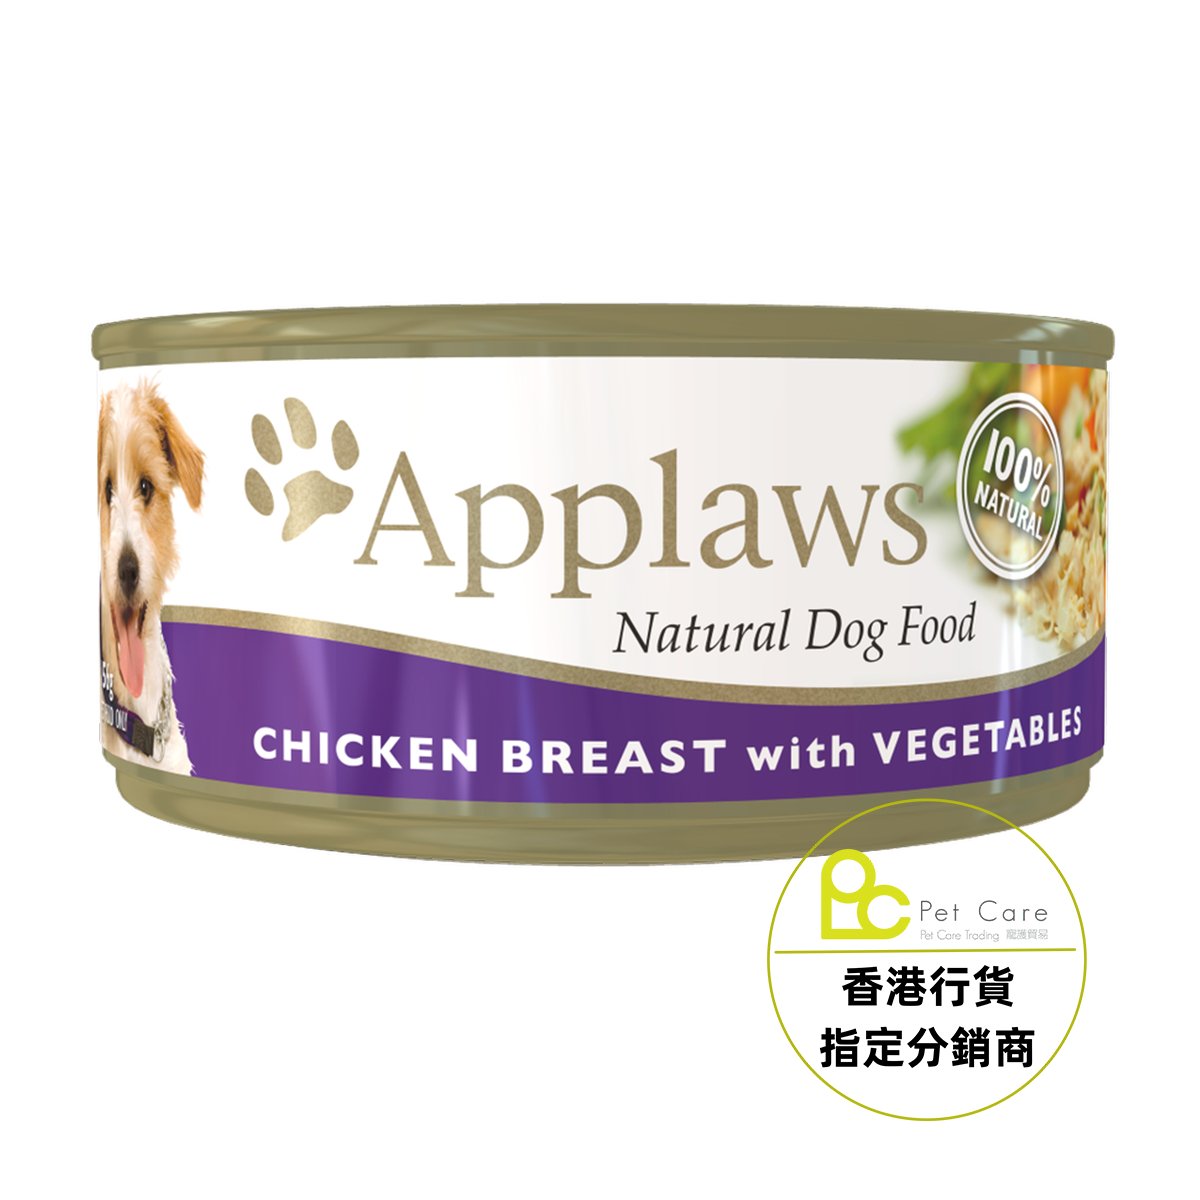 Applaws Dog 全天然 狗罐頭 - 雞胸 蔬菜 156g - 幸福站